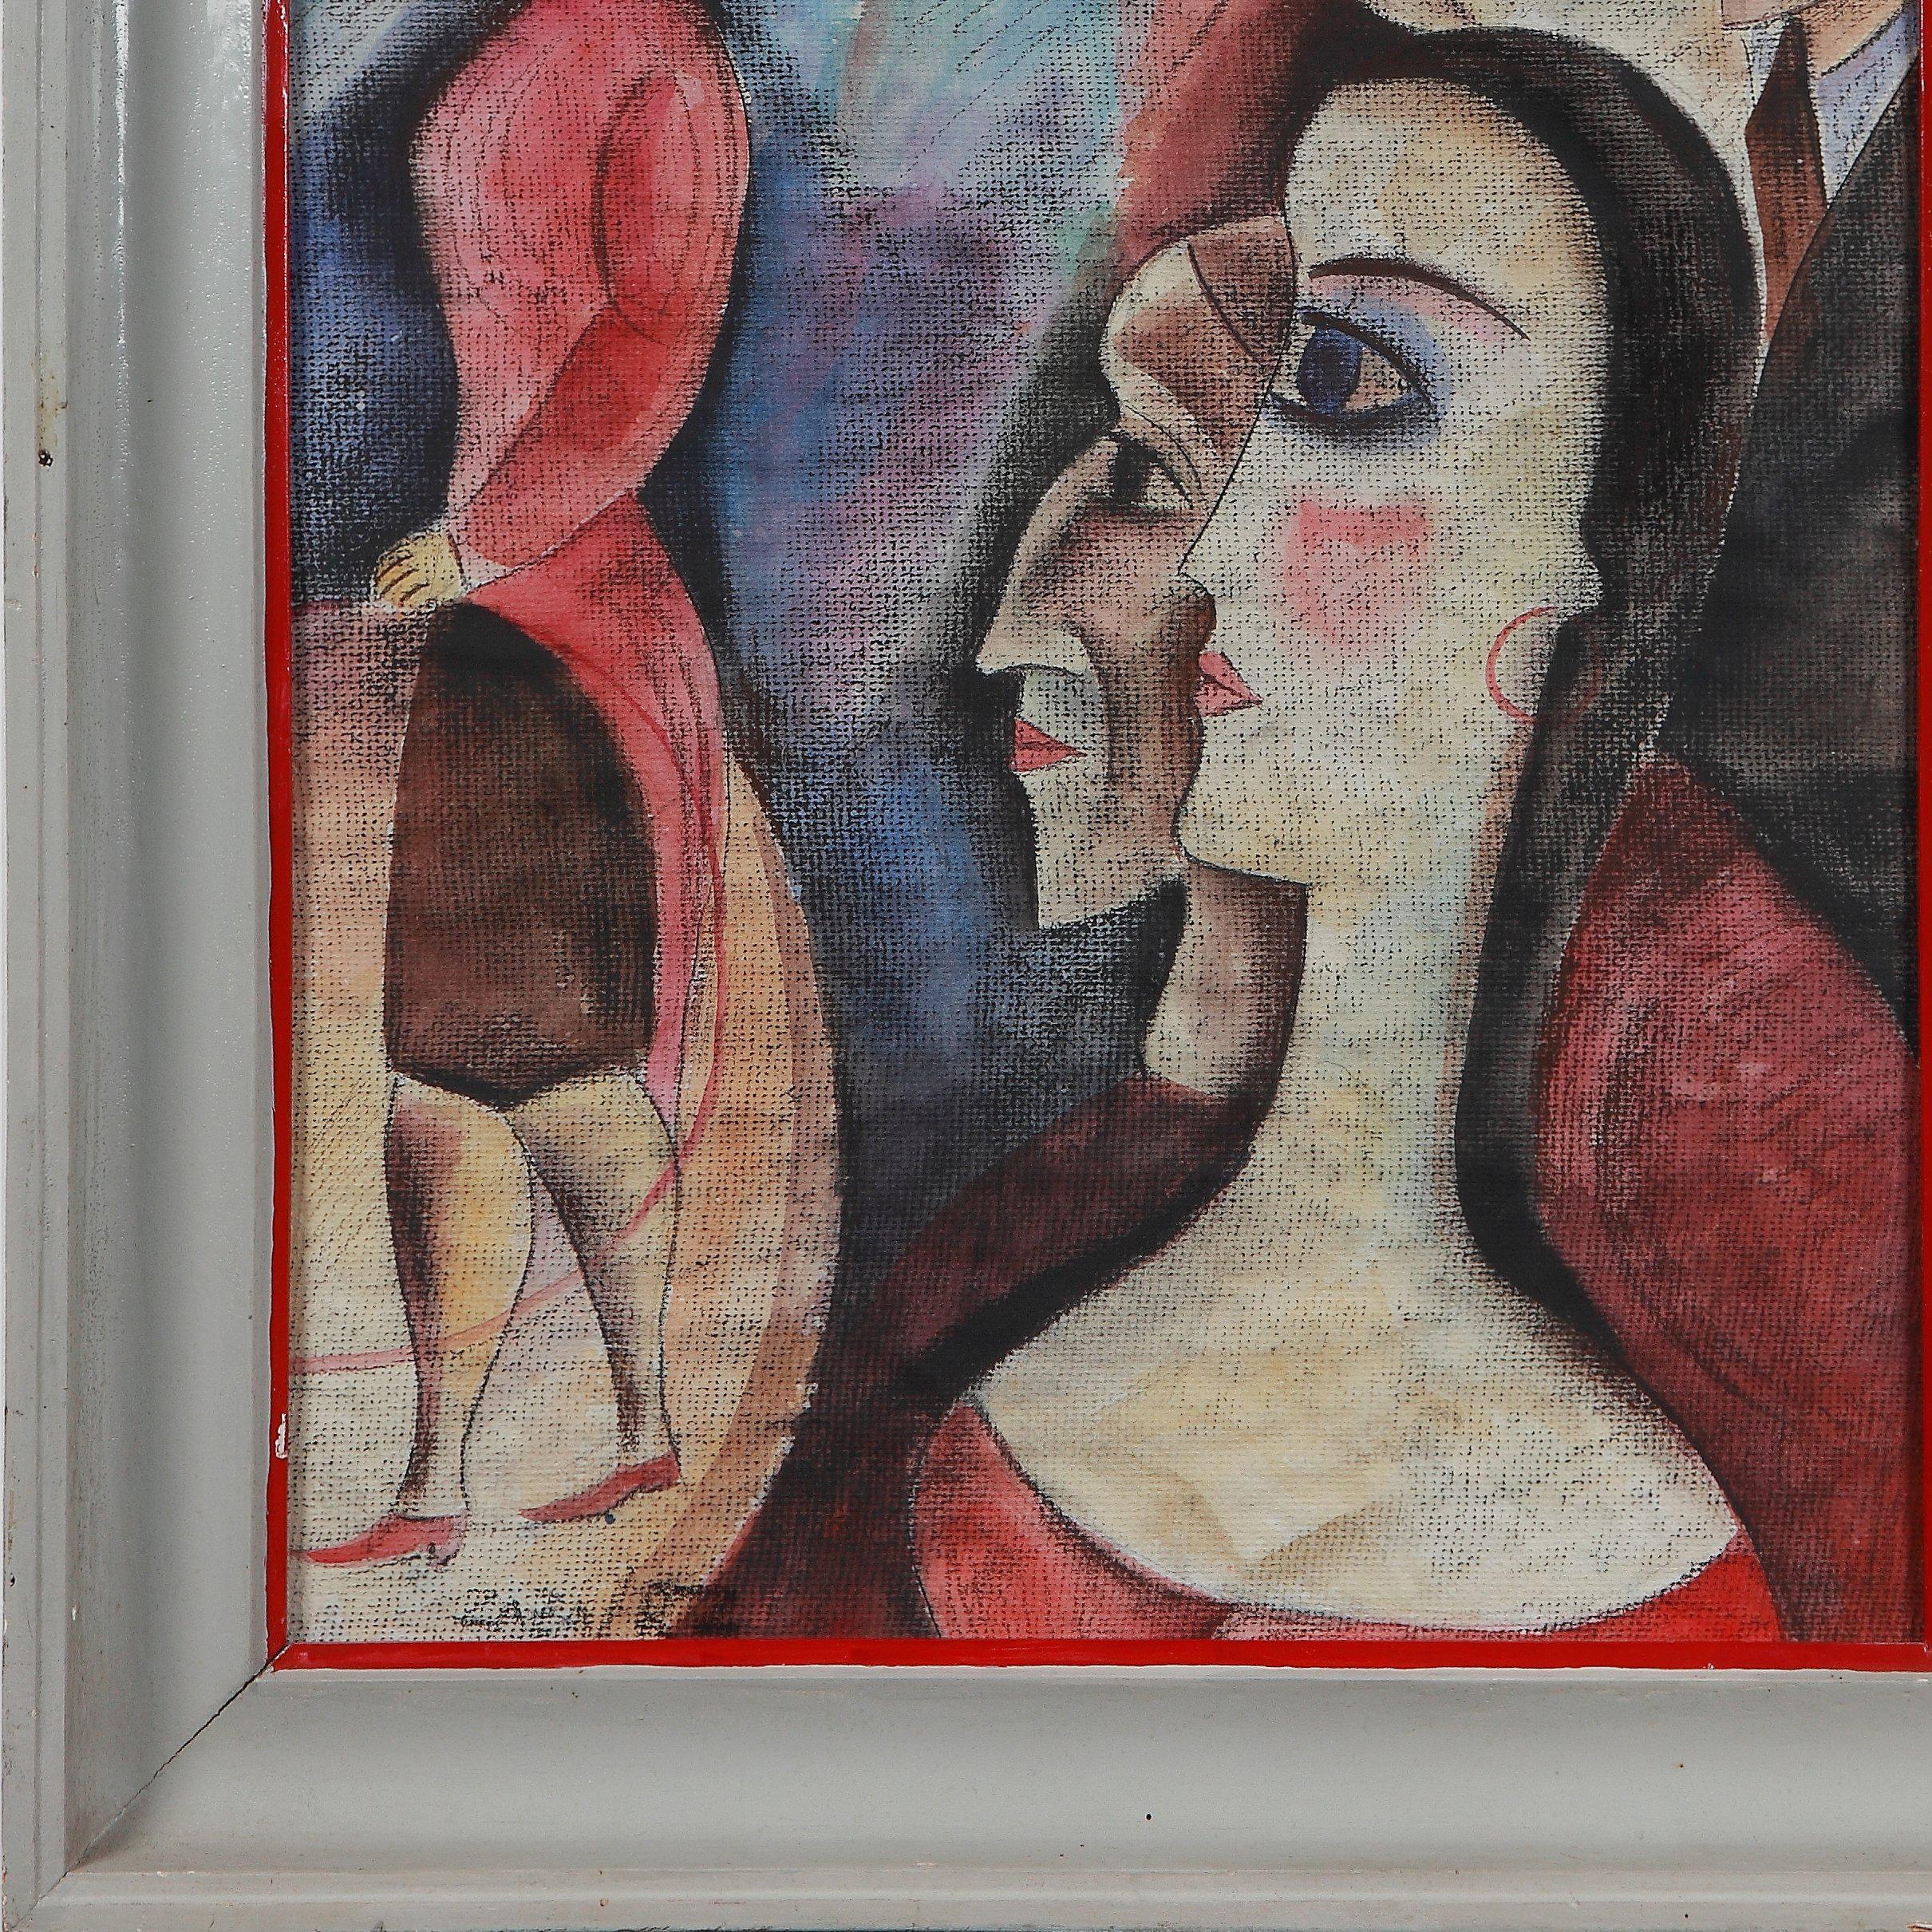 Médias mixtes sur papier. Signé amant à gauche : ZAZA. Daté et méconnaissable. Encadré. Mesures : 26.57 x 15.16 in ( 67,5 x 38,5 cm )

Zaza Tuschmalischvili (née le 15 mai 1960 à Skra, Géorgie) est une peintre géorgienne qui vit et travaille à